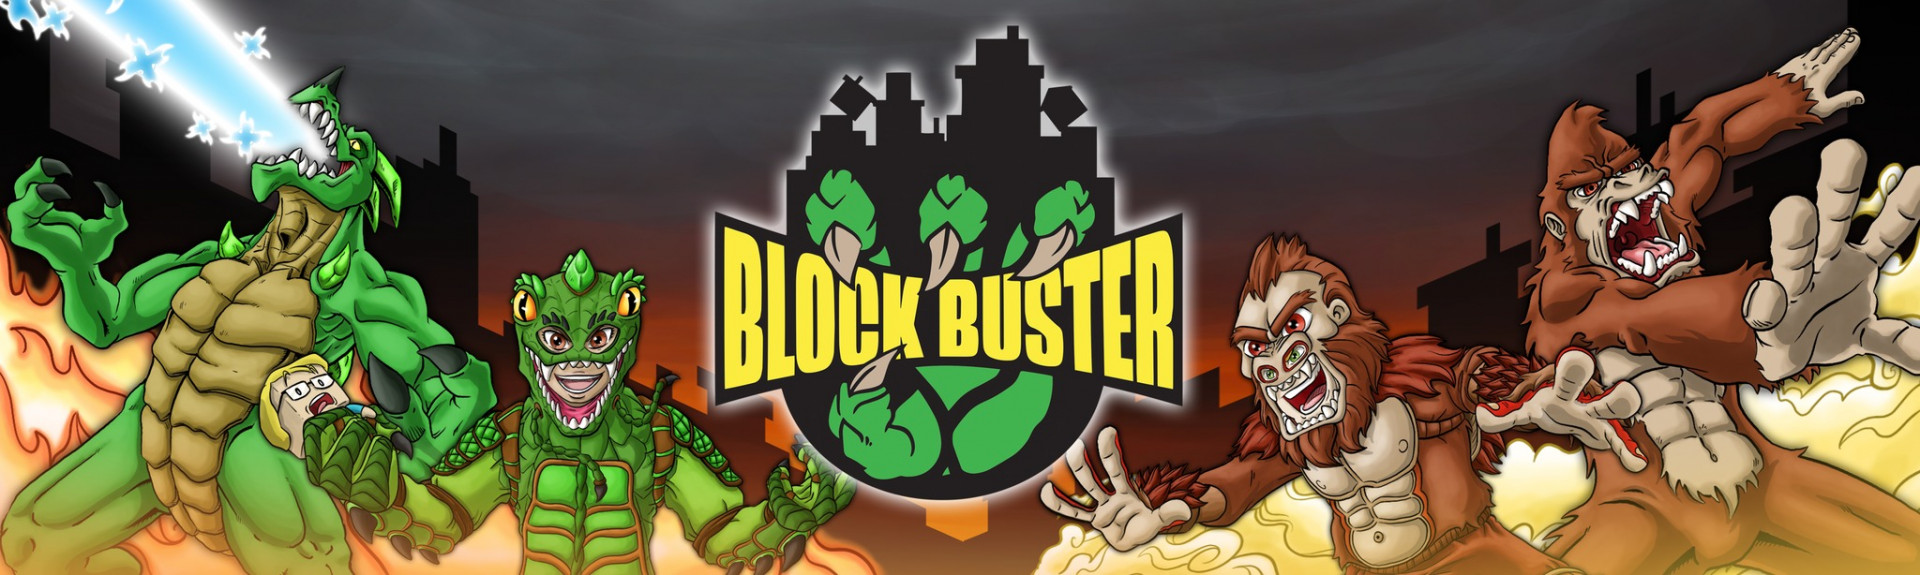 Block Buster: ANÁLISIS